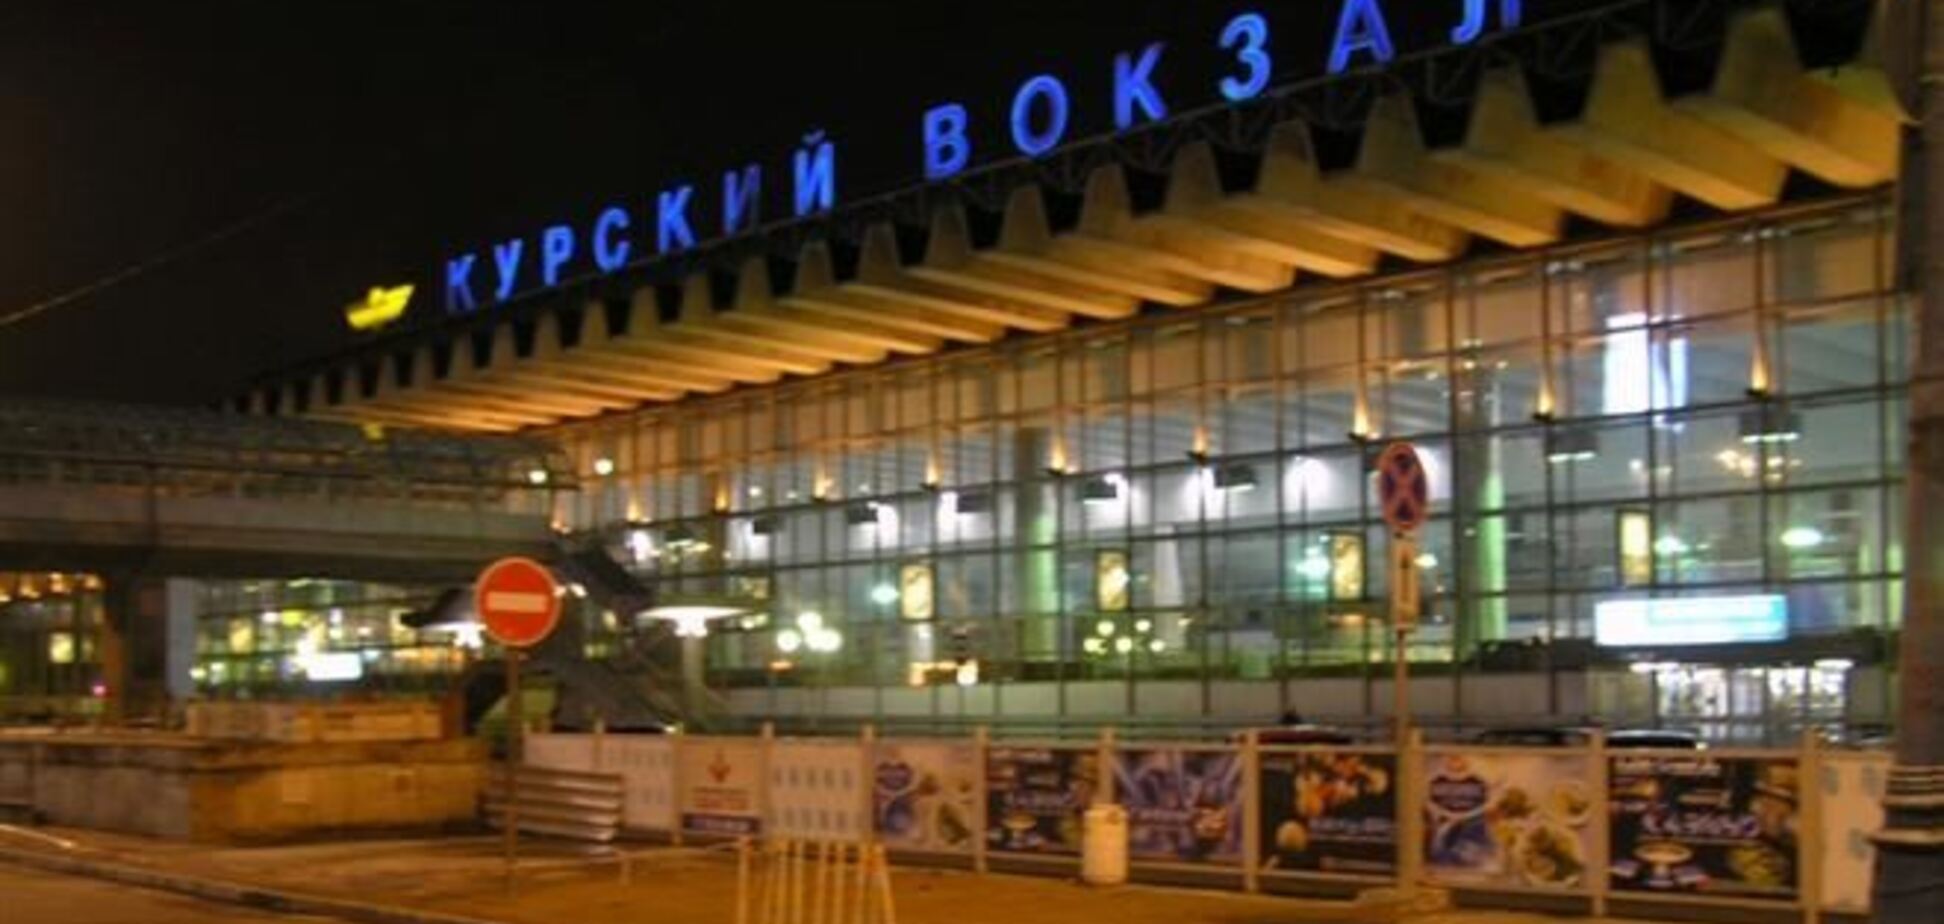 Курский вокзал в Москве проверяют на взрывчатку 